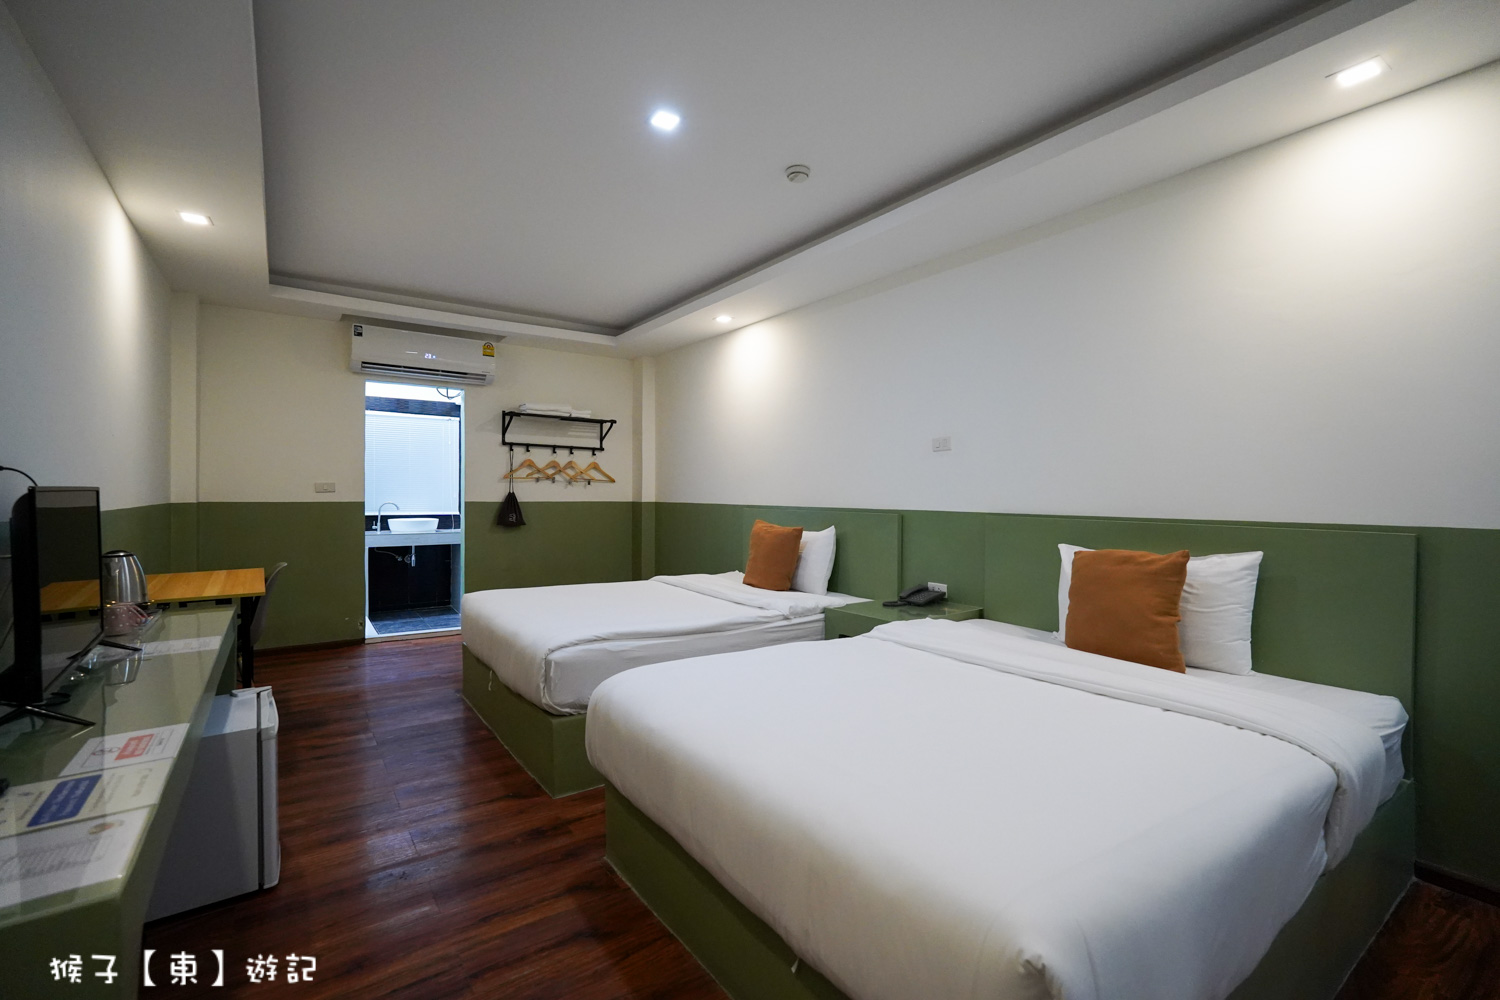 網站近期文章：[泰國] The Ram Hotel 曼谷BKK機場附近飯店一晚不用800 房間乾淨寬敞 往週邊景點非常方便